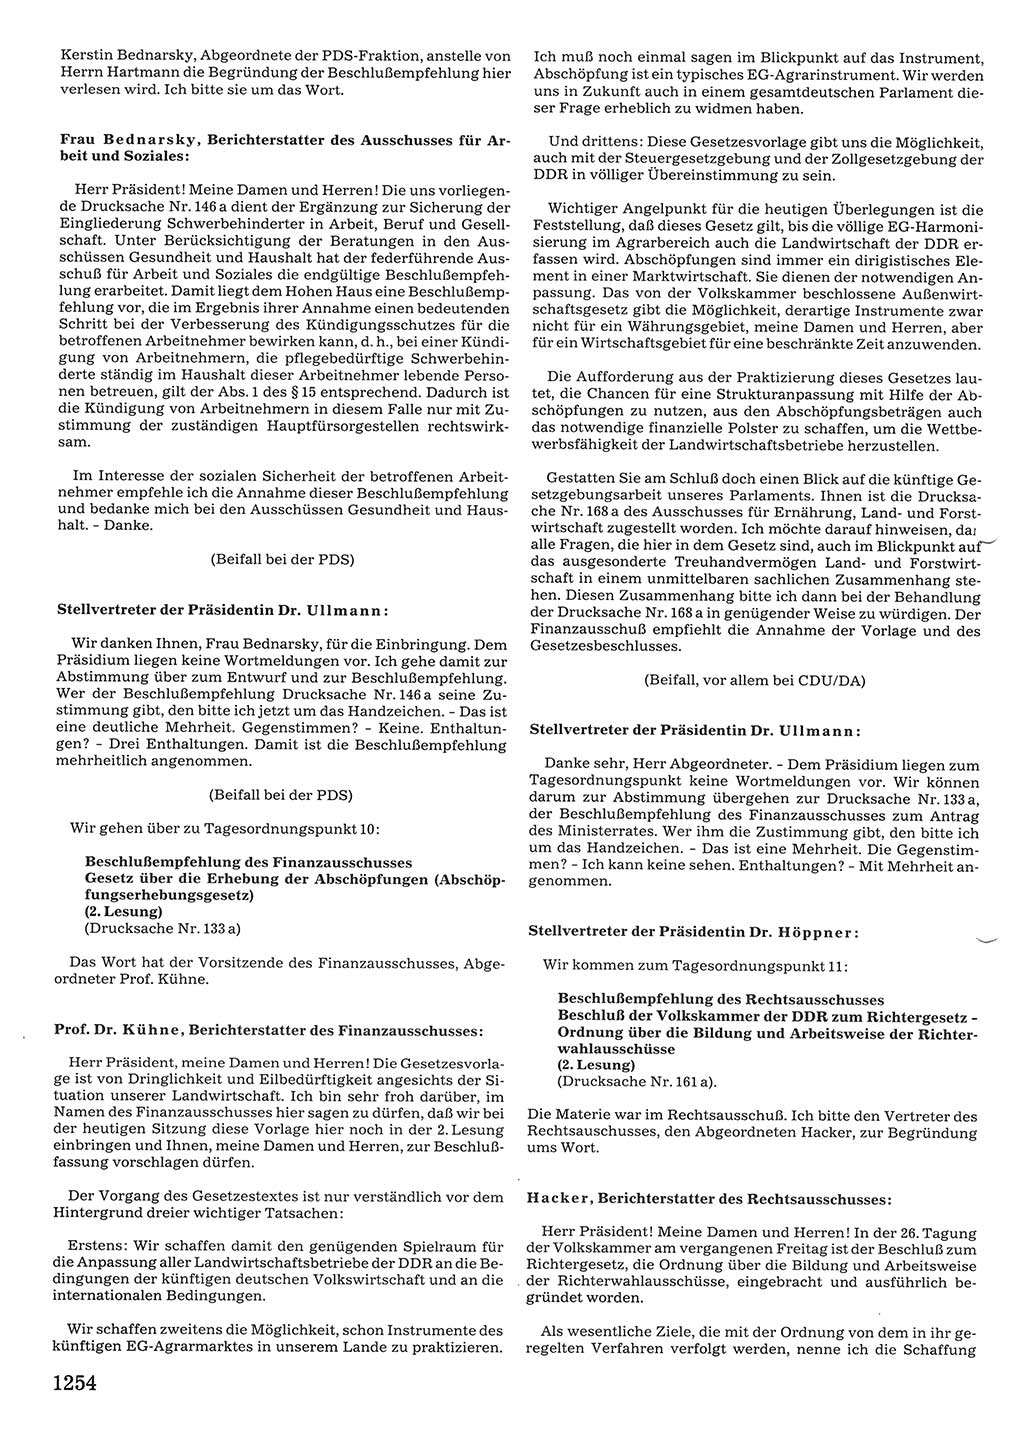 Tagungen der Volkskammer (VK) der Deutschen Demokratischen Republik (DDR), 10. Wahlperiode 1990, Seite 1254 (VK. DDR 10. WP. 1990, Prot. Tg. 1-38, 5.4.-2.10.1990, S. 1254)